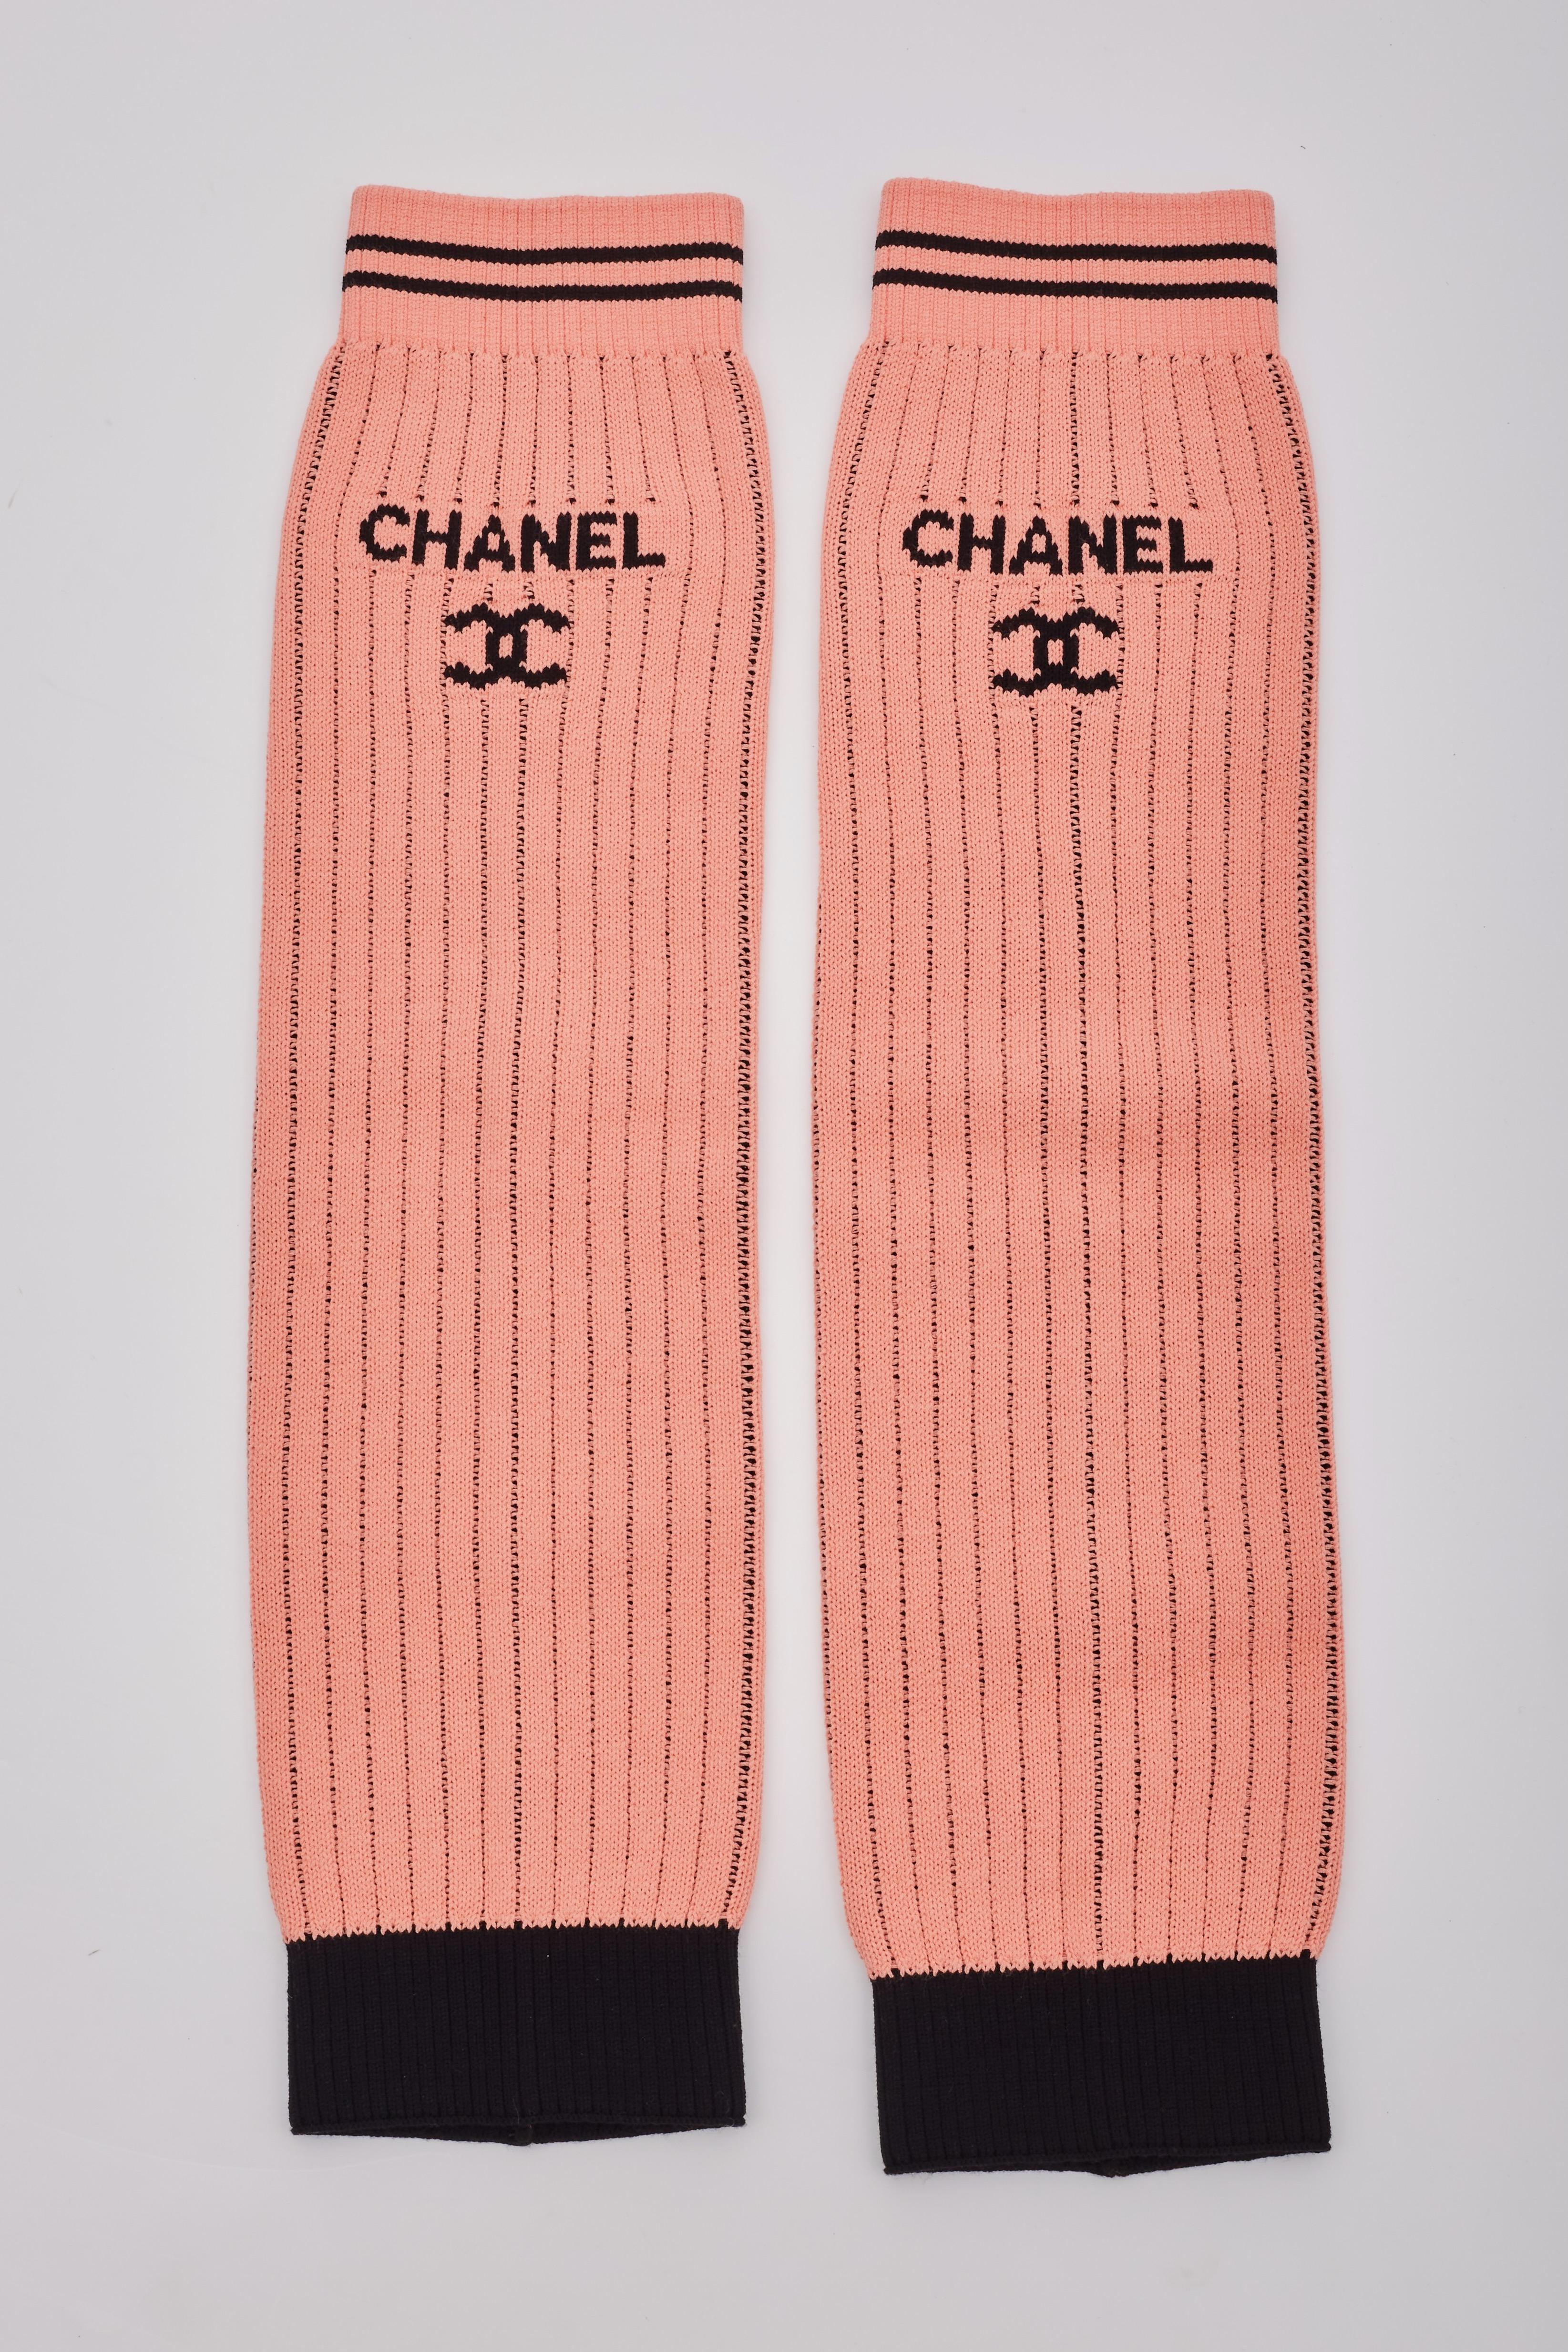 Voici les très recherchées jambières Chanel en maille, en abricot (corail), qui font partie de la collection en production limitée de la ligne Croisière 2024 de Chanel. Cette pièce a été présentée lors du défilé de LA Hollywood Cruise, plus